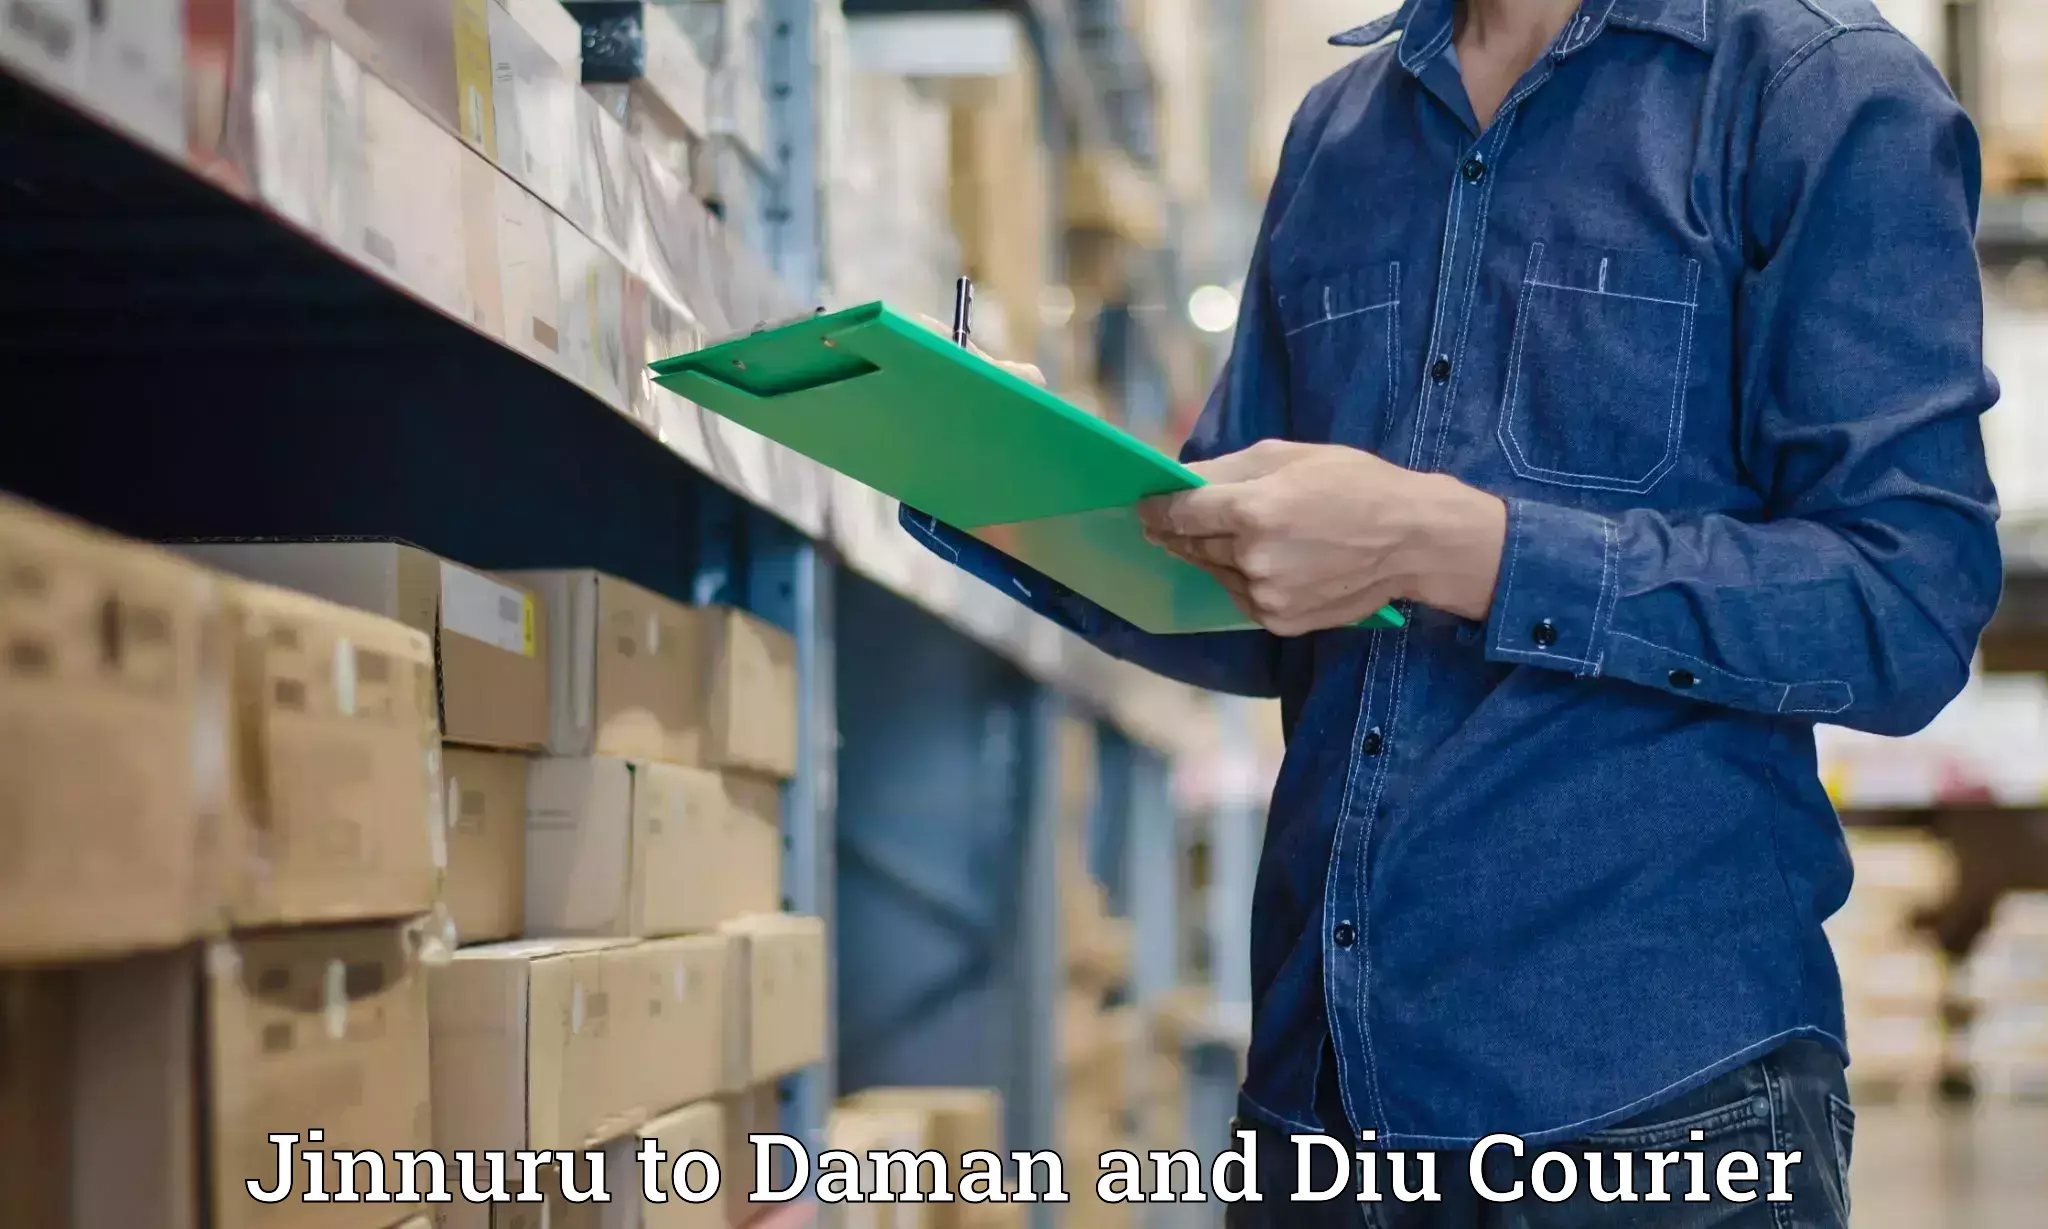 Logistics service provider Jinnuru to Diu